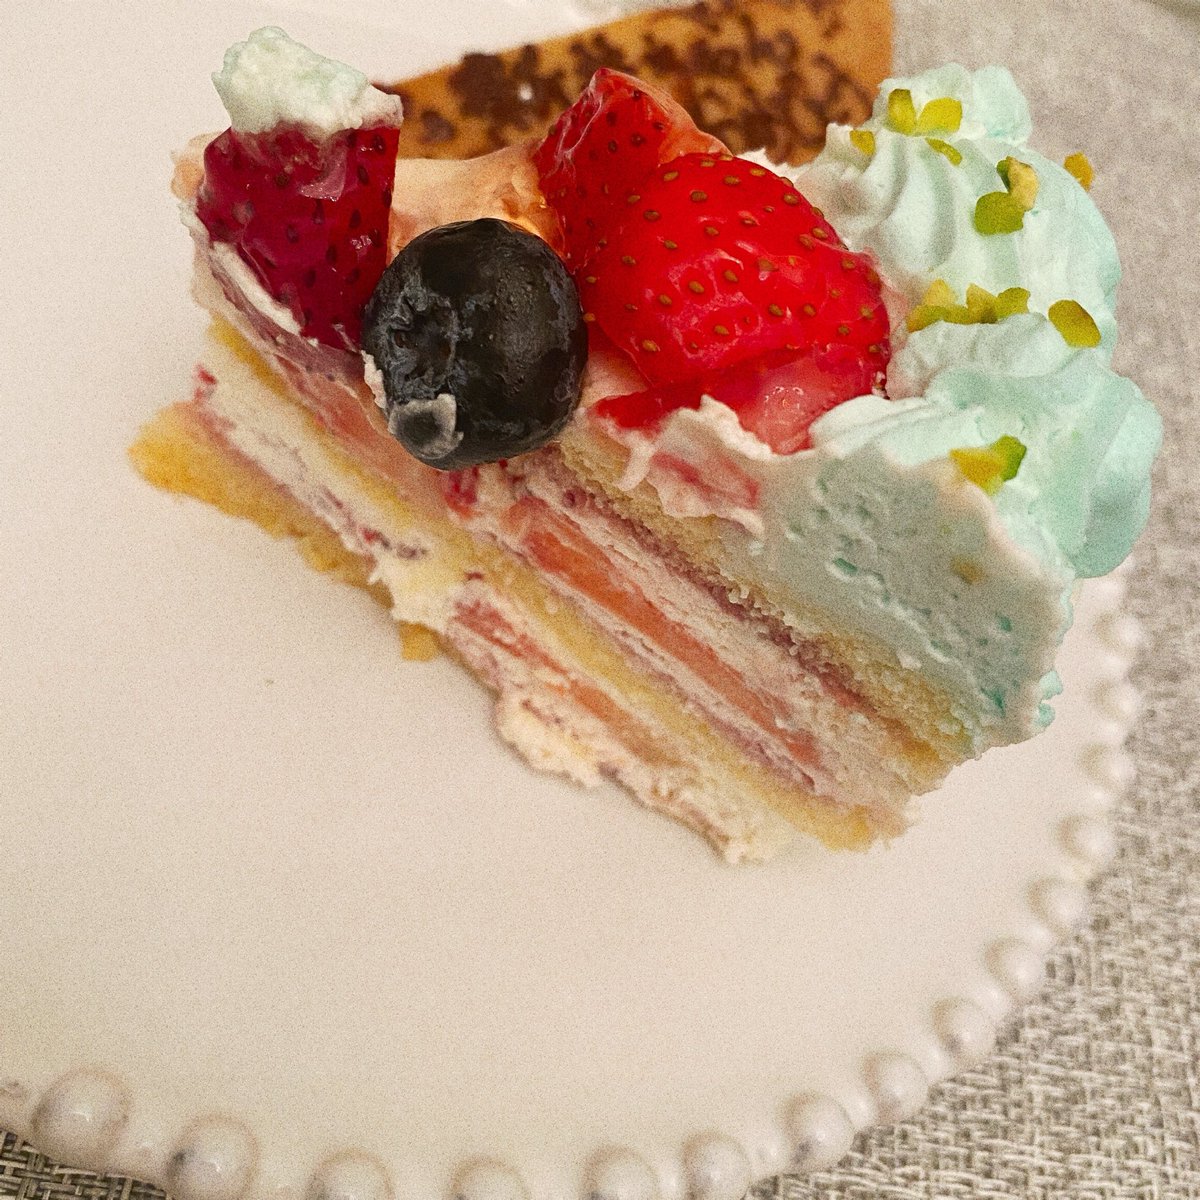 岡田ロビン翔子 おはようございます朝からケーキを食べるととてつもなく幸せな気持ちになっちゃうのでケーキって凄いです